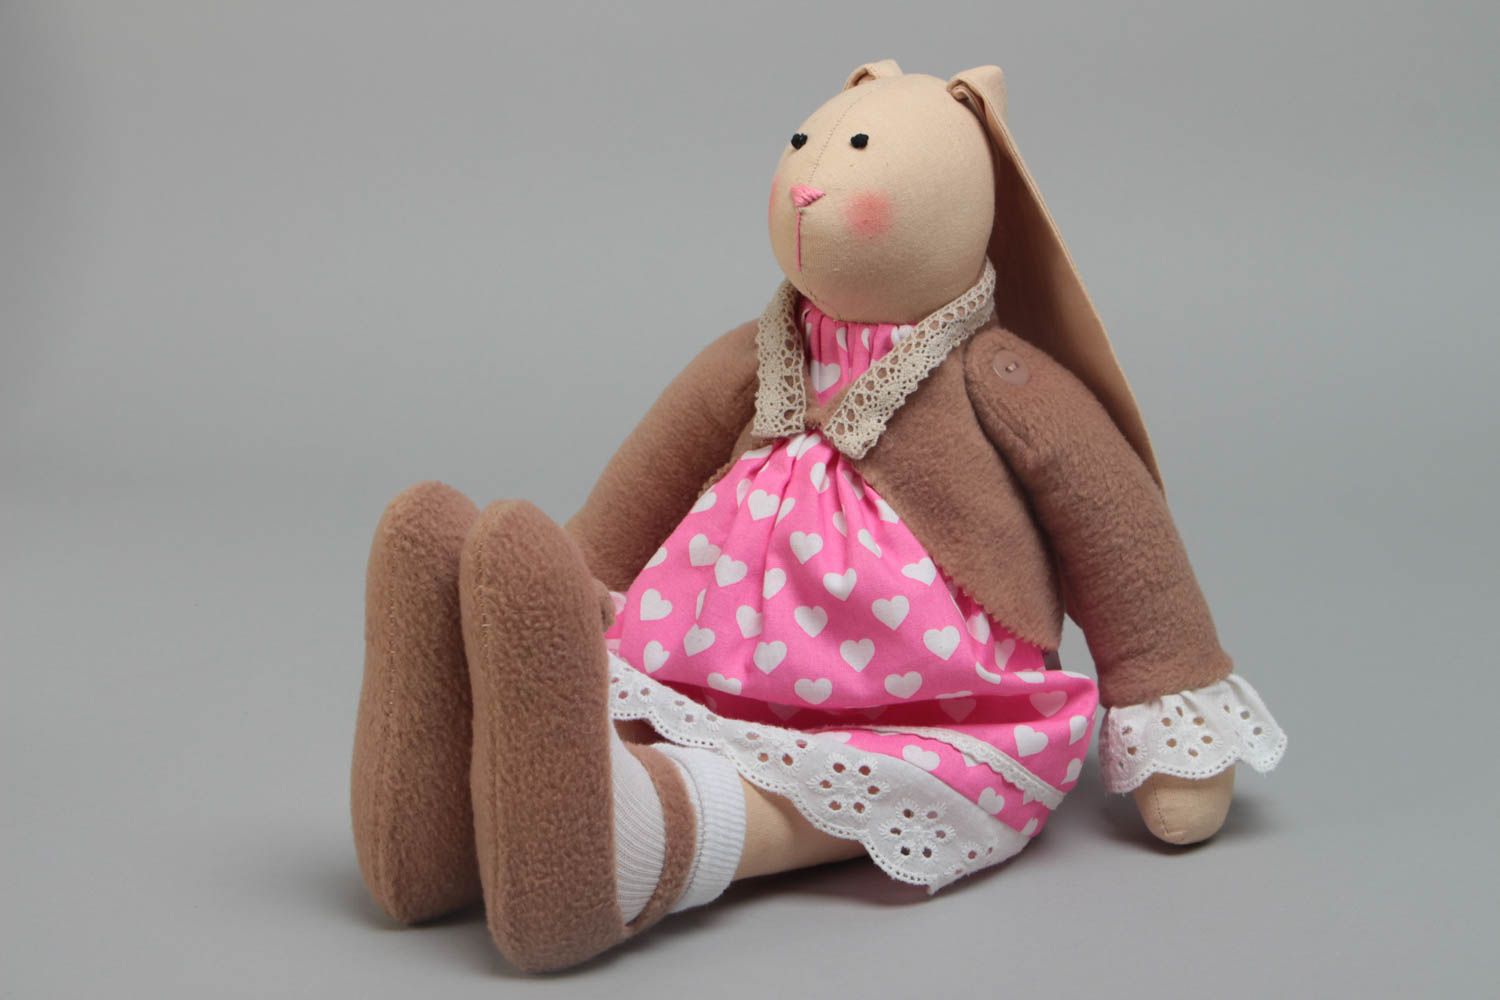 Мягкая игрушка для детей тканевая ручной работы красивая зайка в платье фото 2